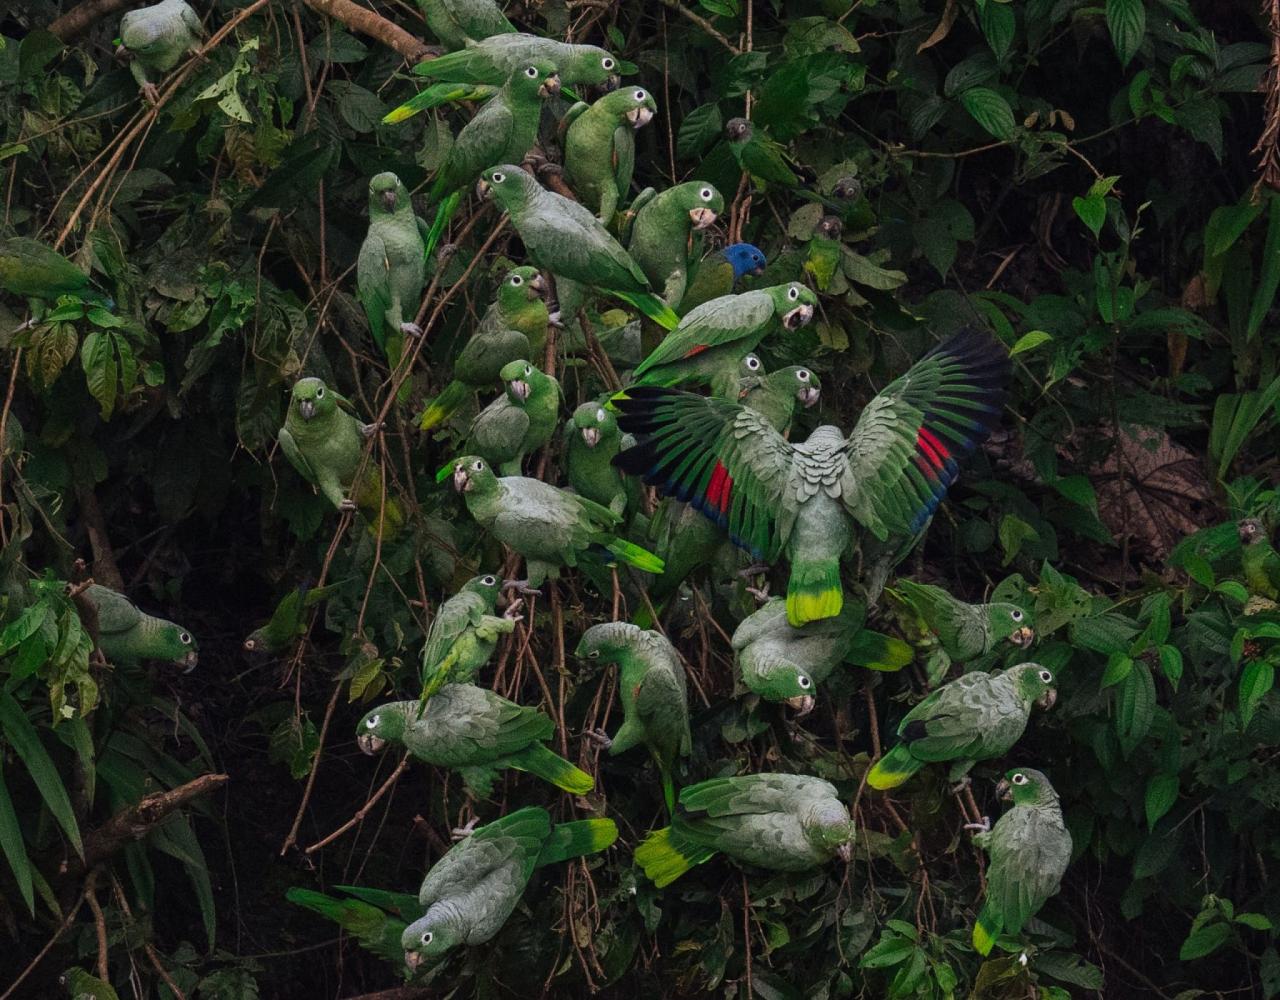 Birding Ecuador, Bird watching Ecuador, Ecuador, South American Birds, Naturalist Journeys, Wildlife Tour, Wildlife Photography, Ecotourism, Specialty Birds, Endemic Birds, Birding Hotspot